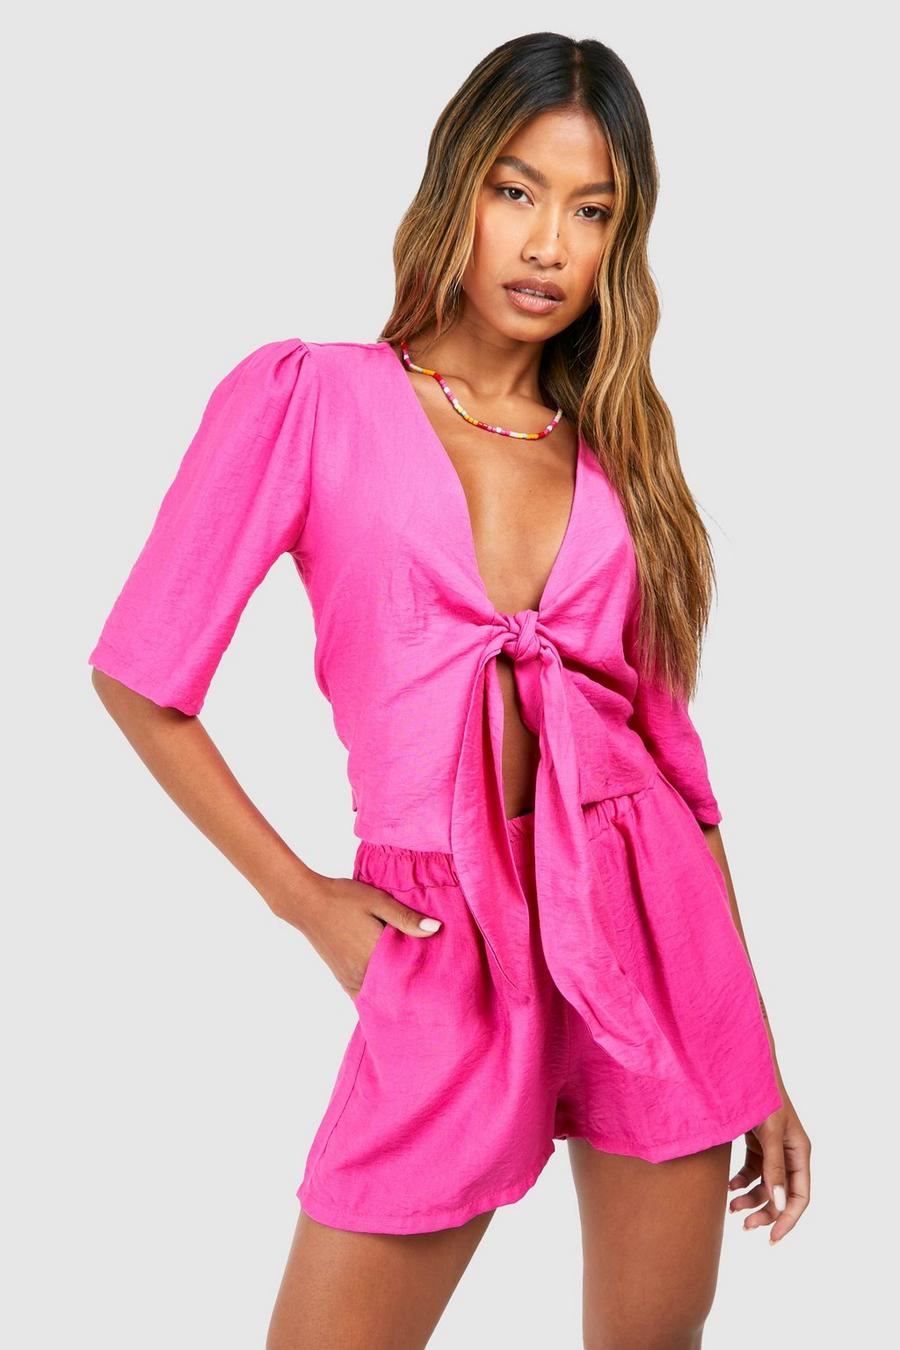 Strukturierte Leinen-Bluse mit Knoten & Shorts, Hot pink